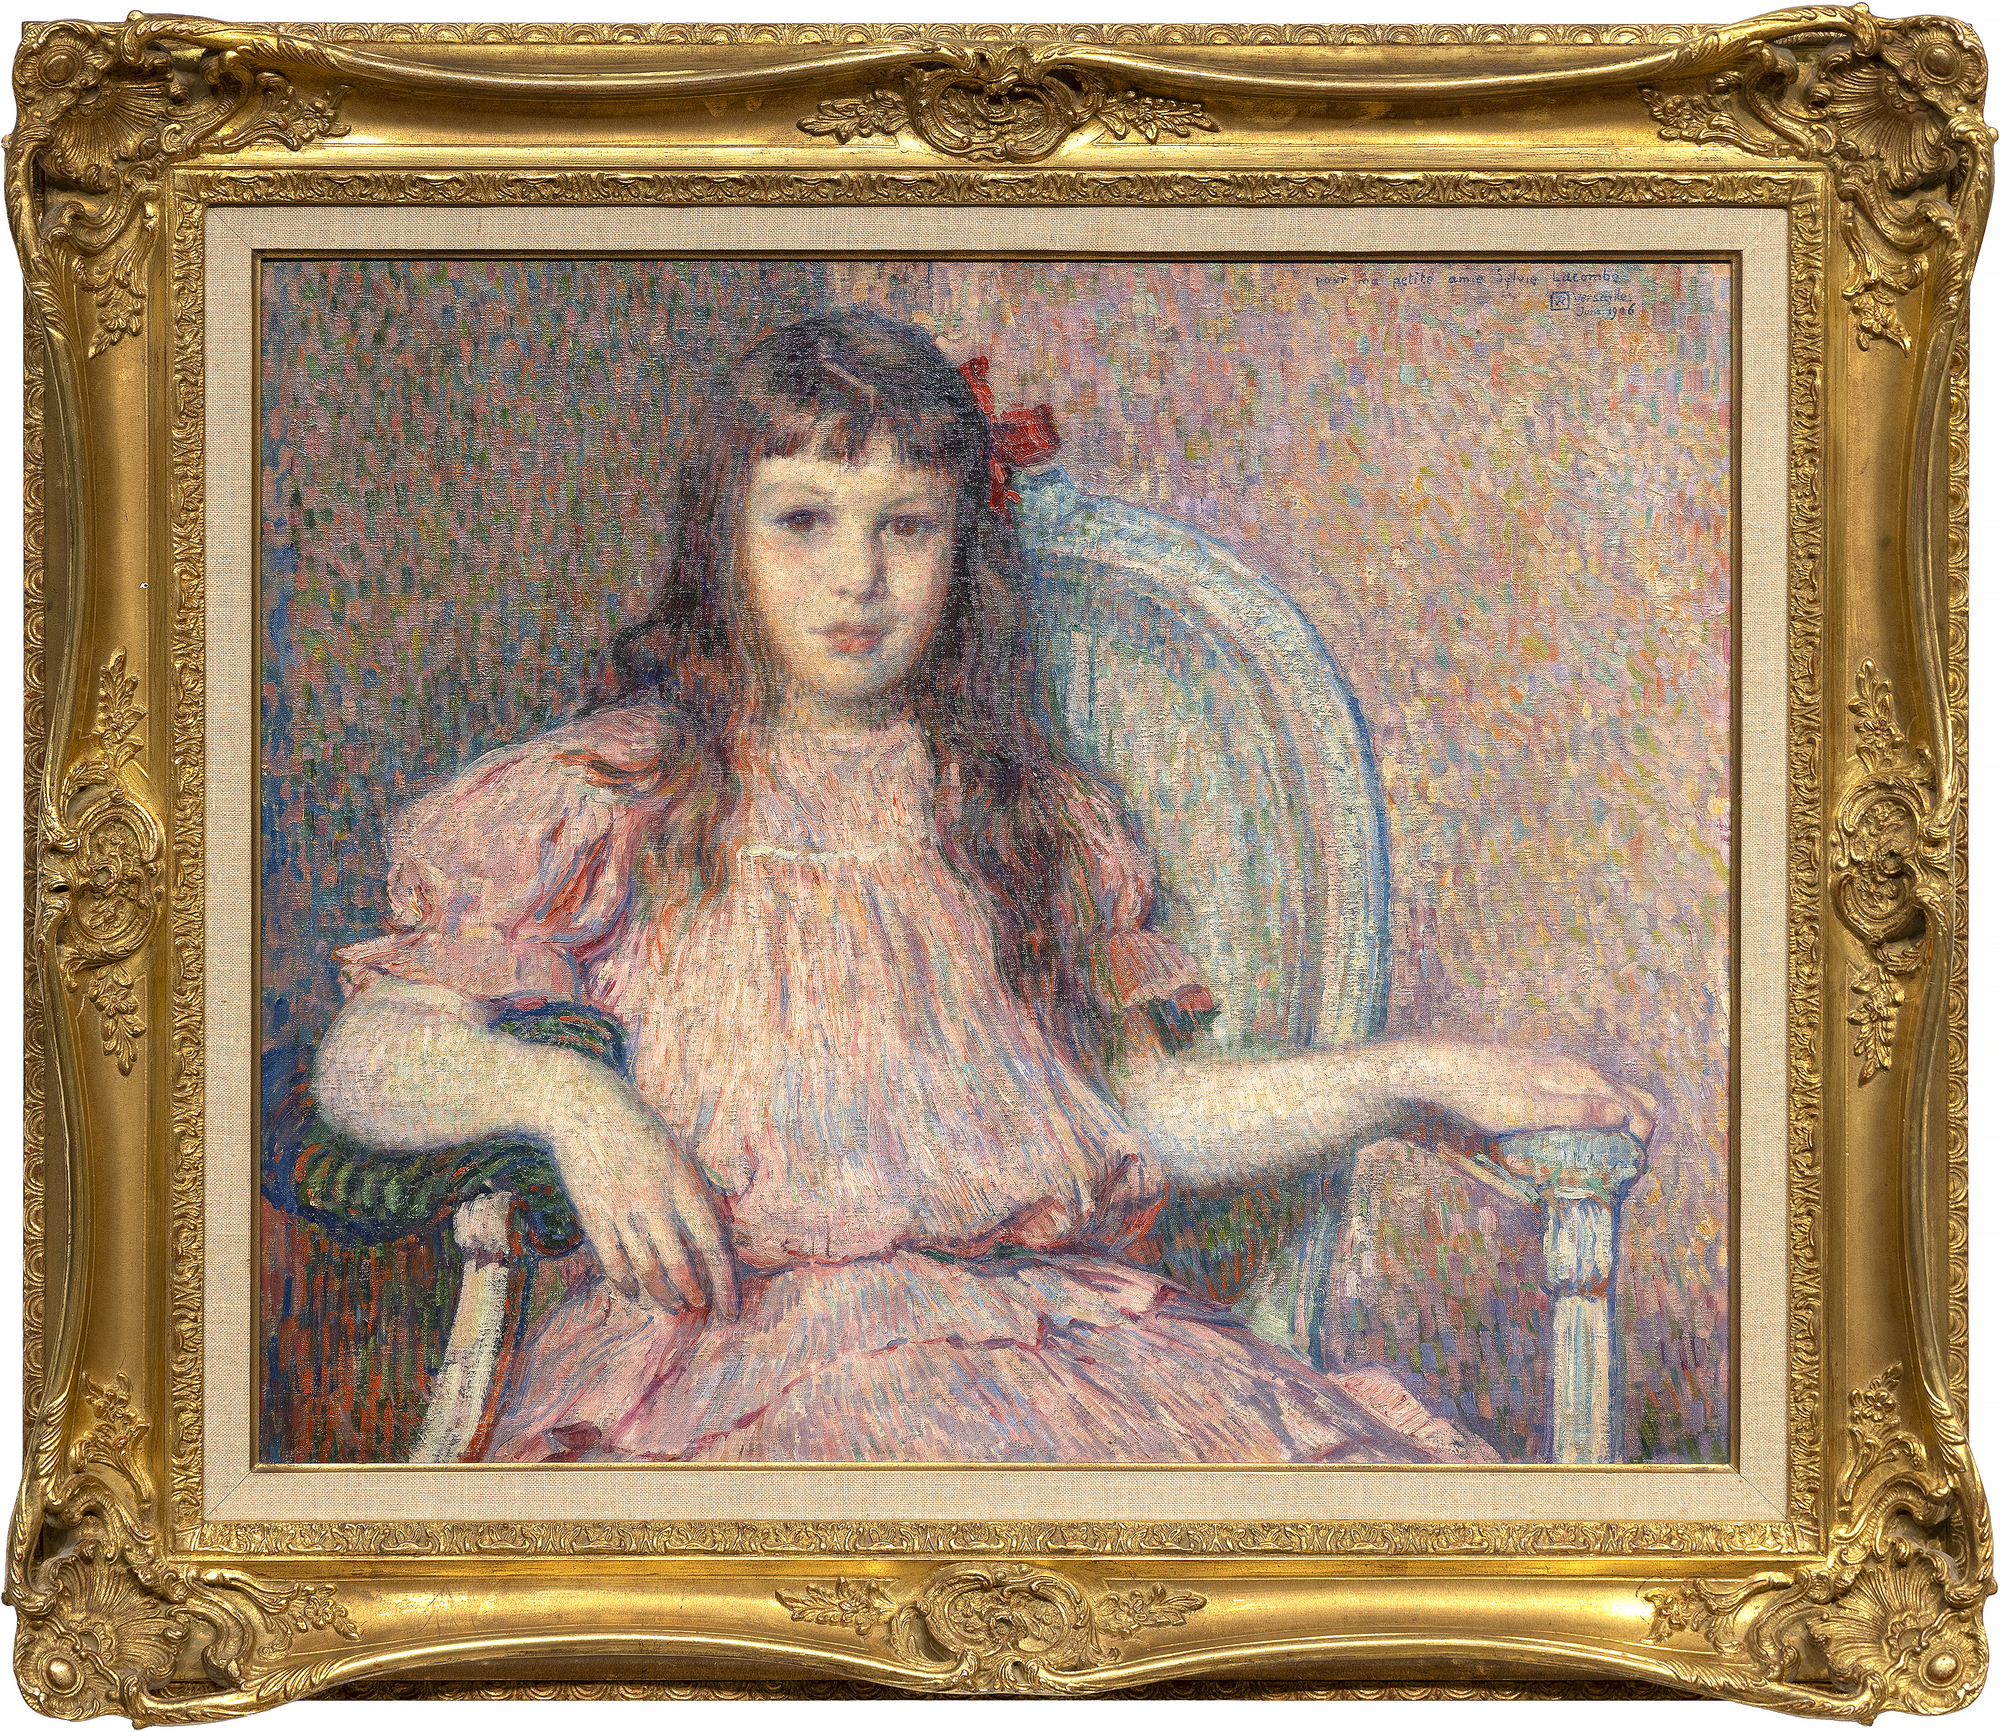 1906年に描かれたテオ・ファン・ライセルベルヘの「シルヴィ・ラコンの肖像」は、当時最も洗練され、一貫した肖像画家の一人による古典的な傑作である。色彩は調和がとれており、筆致は力強く、素材に合わせたもので、彼女の体や表情は真実味を帯びたものである。ゴーギャンと親交があり、ボナール、ドニ、ヴュイヤールらとレ・ナビのメンバーだった親友の画家ジョルジュ・ラコムの娘である。私たちが今、シルヴィ・ラコンブのことを知ることができるのは、ヴァン・ライセルベルヘが微妙な表情を表現することに長けており、注意深い観察と細部へのこだわりによって、彼女の内面への洞察を与えてくれたからです。彼は、彼女の目をあなたの目に向けるという直接的な視線を選び、絵と私たちの物理的な関係にかかわらず、主題と鑑賞者の間に避けられない契約を結んでいるのです。この肖像画を描いたとき、ヴァン・ライセルベルグは点描画の技法をほとんど放棄していた。しかし、彼は引き続き色彩理論の指針を適用し、緑にピンクやモーヴといった赤の色合いを用いて、補色による調和のとれたアメリケーション・パレットを作り上げ、そこに強烈なアクセントとして、彼女の頭の横に非対称に置かれた強烈な彩度の赤いリボンが目を引きます。